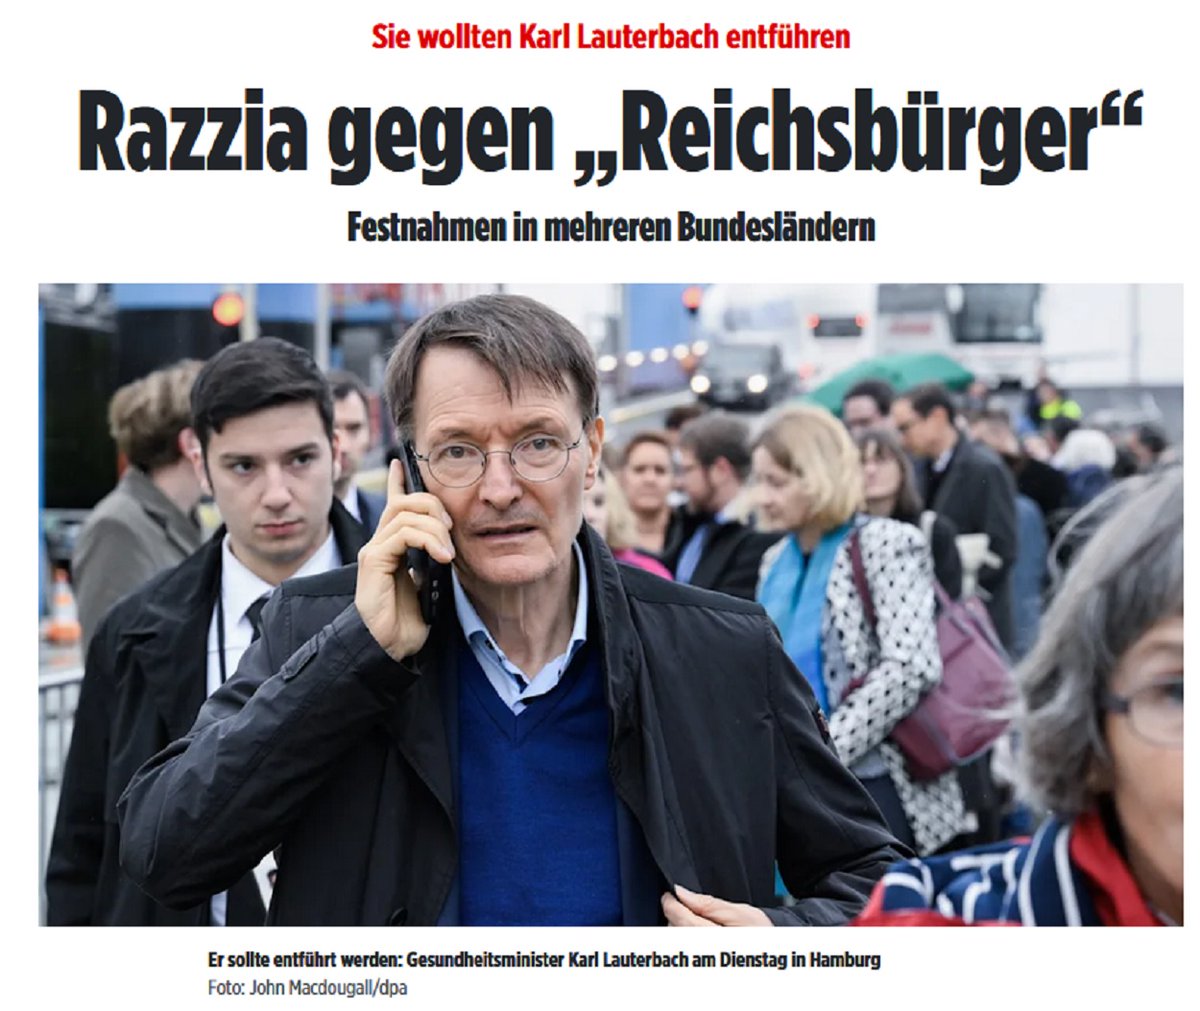 Nach der für die #SPD verlorene Landtagswahl in #Hessen #Hessenwahl #Hessenwahl23 macht #FaeserRücktritt #Faser nun auf Bundesebene Druck. 

Wieder wurden ganz gefährliche Terroristen festgesetzt. #Reichsbürger gar. In #Frankfurt war es zB ein 61-jähriger Dude, der #Lauterbach